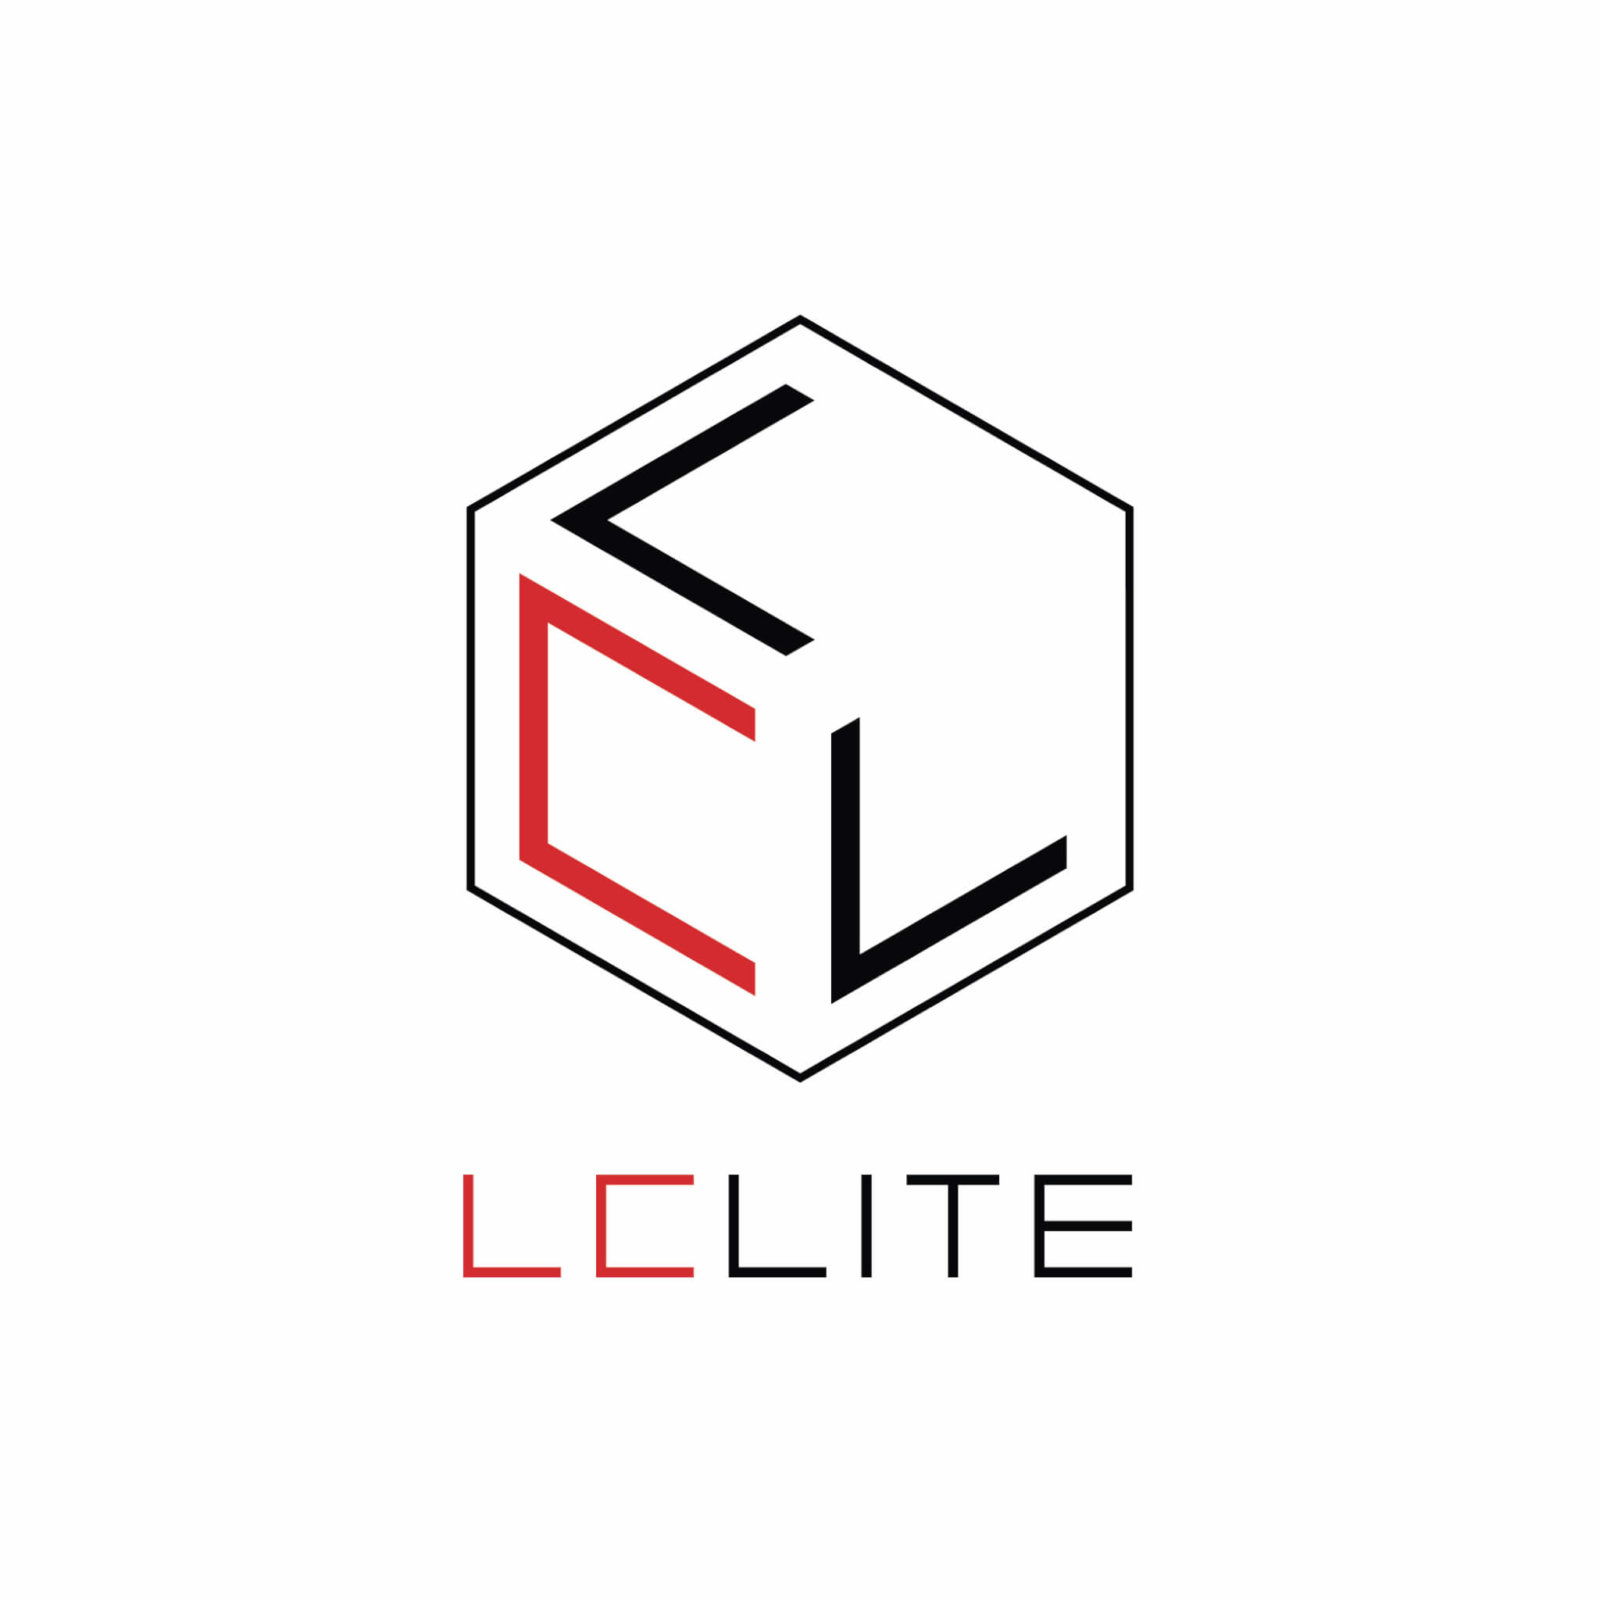 Lclite logo